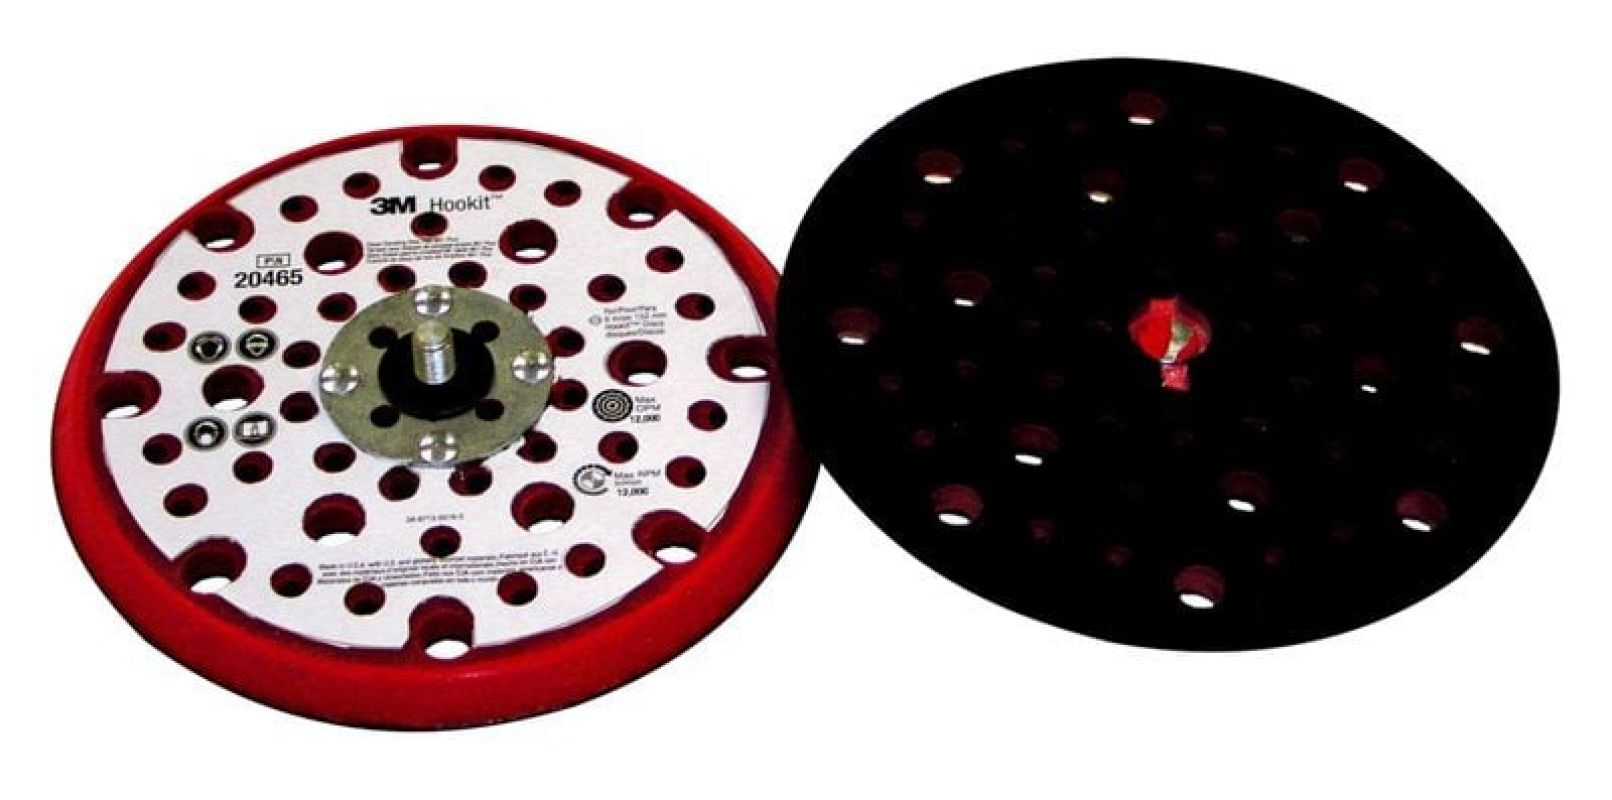 3M™ Hookit™ tépőzáras felfogó, 150 mm x 9,5 mm x 5/16", multilyukas, 16 mm központi furattal, kemény, piros, PN20465